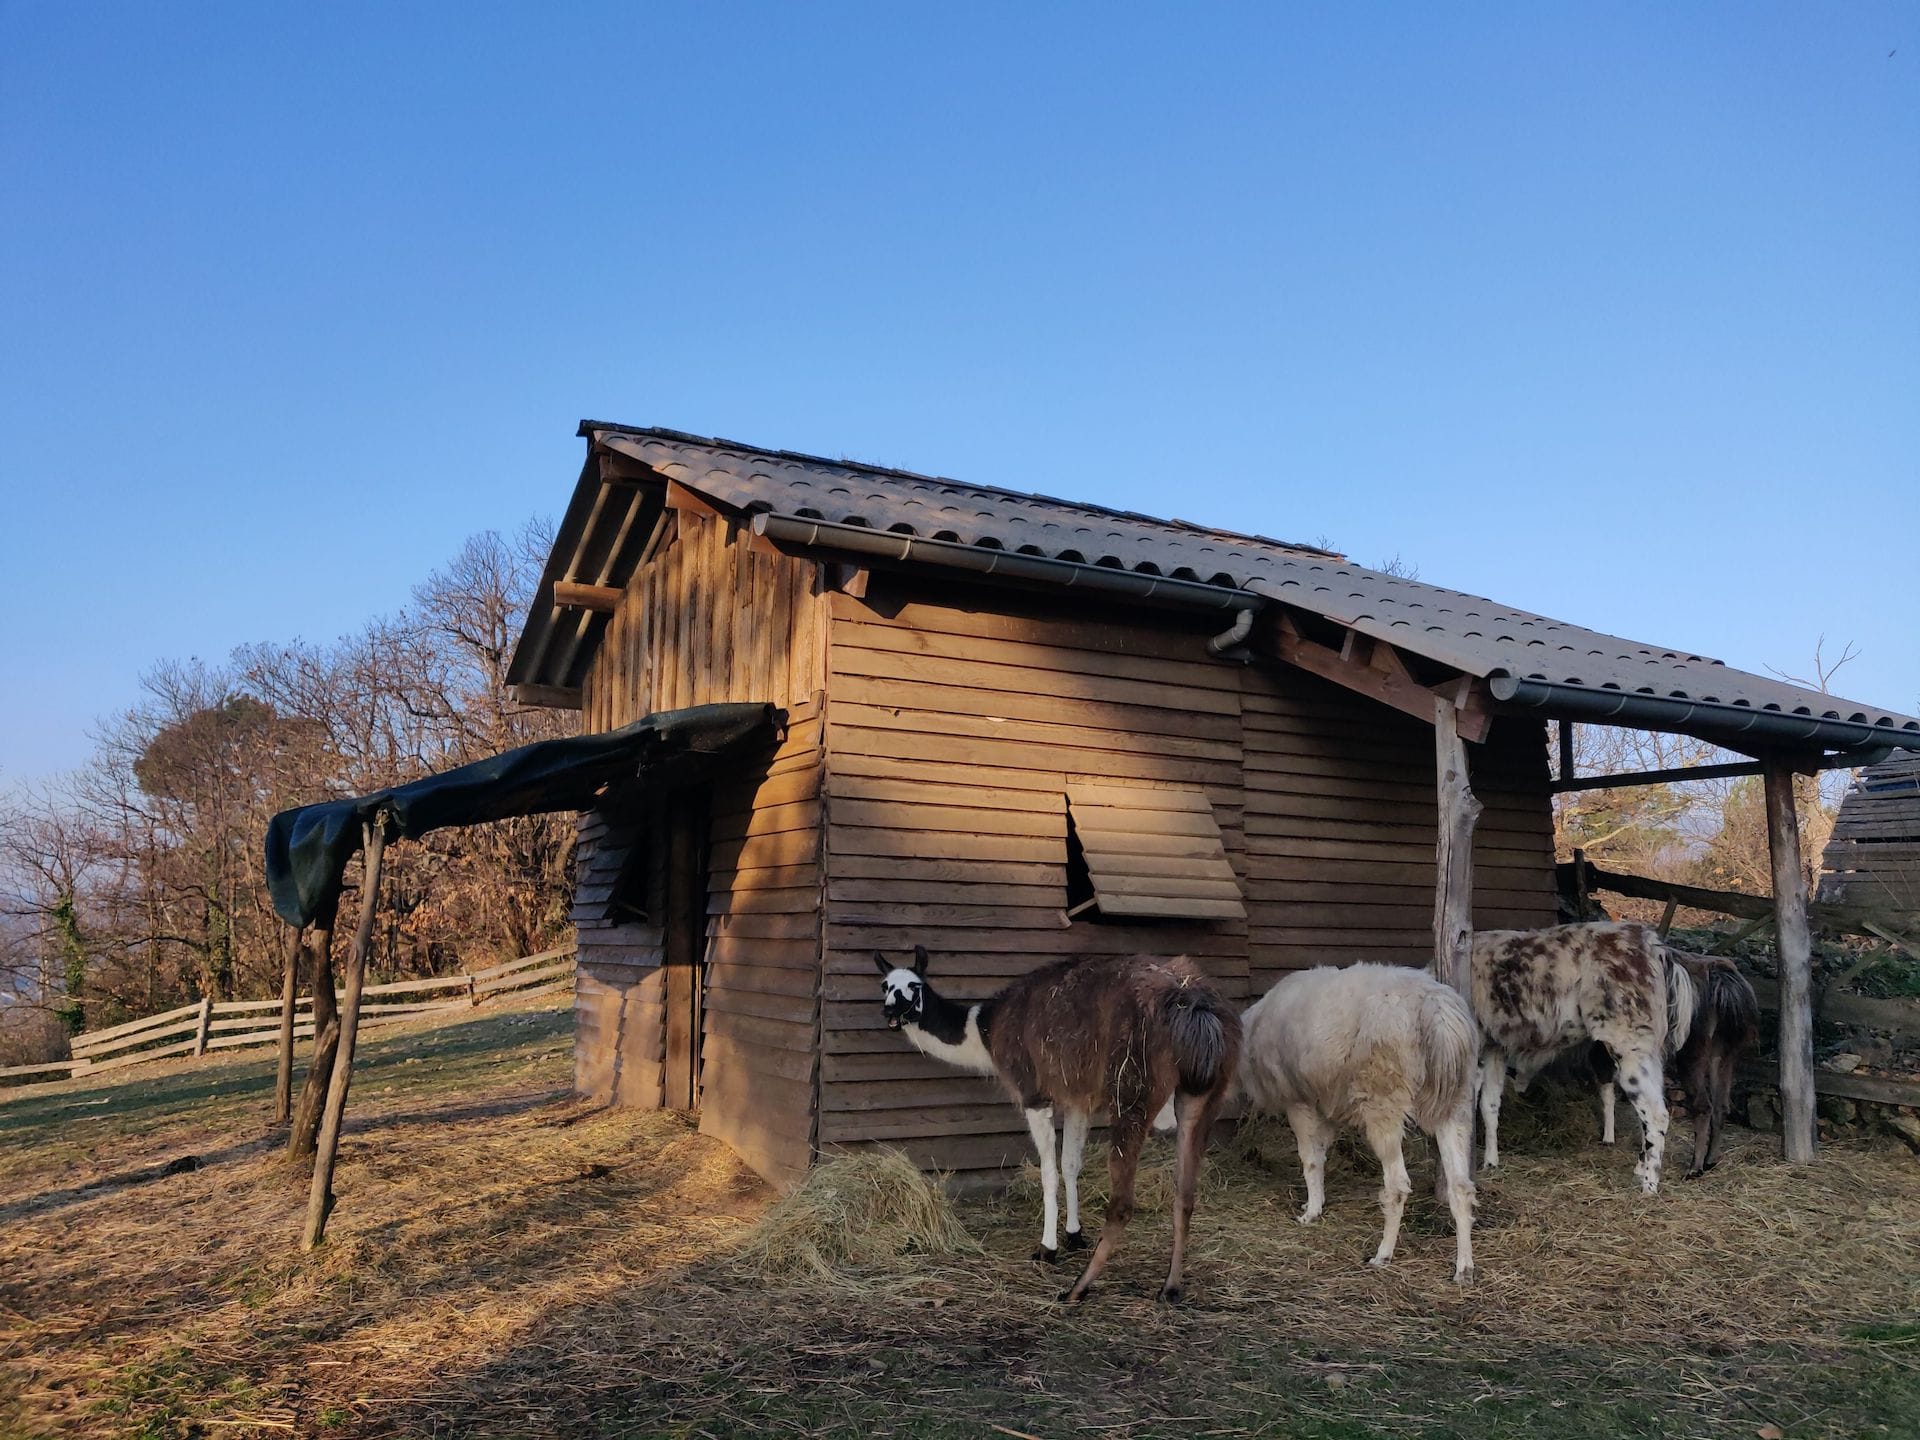 Quatre lamas, tous préoccupés par leur tas de foin devant leur cabane, sauf un qui tourne la tête pour faire face à l'objectif